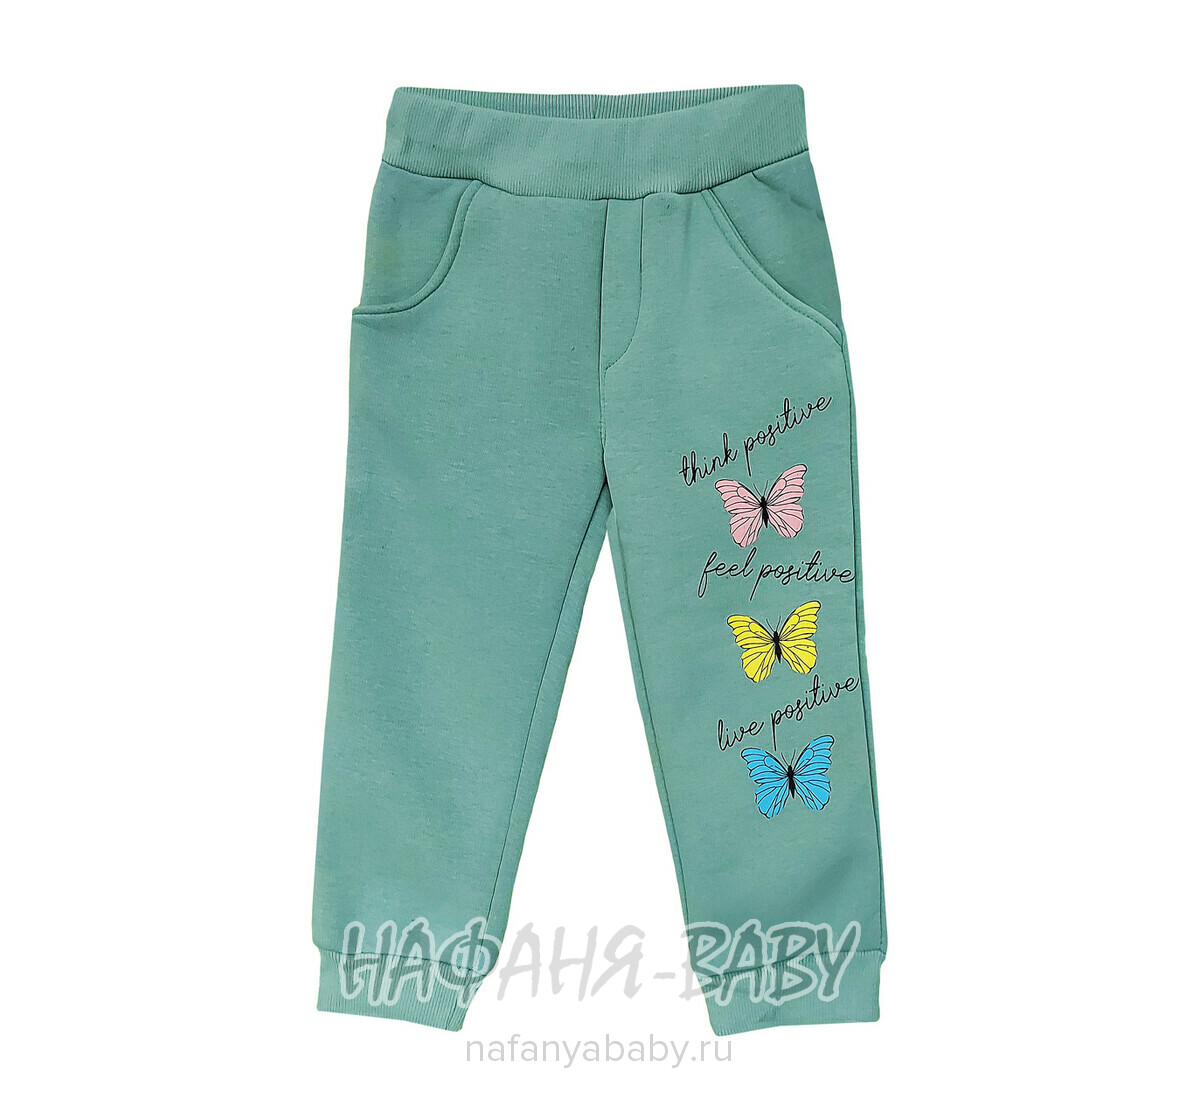 Детские теплые брюки Cit-Cit арт: 6504 от 2 до 5 лет, цвет дымчато-зеленый хаки, оптом Турция